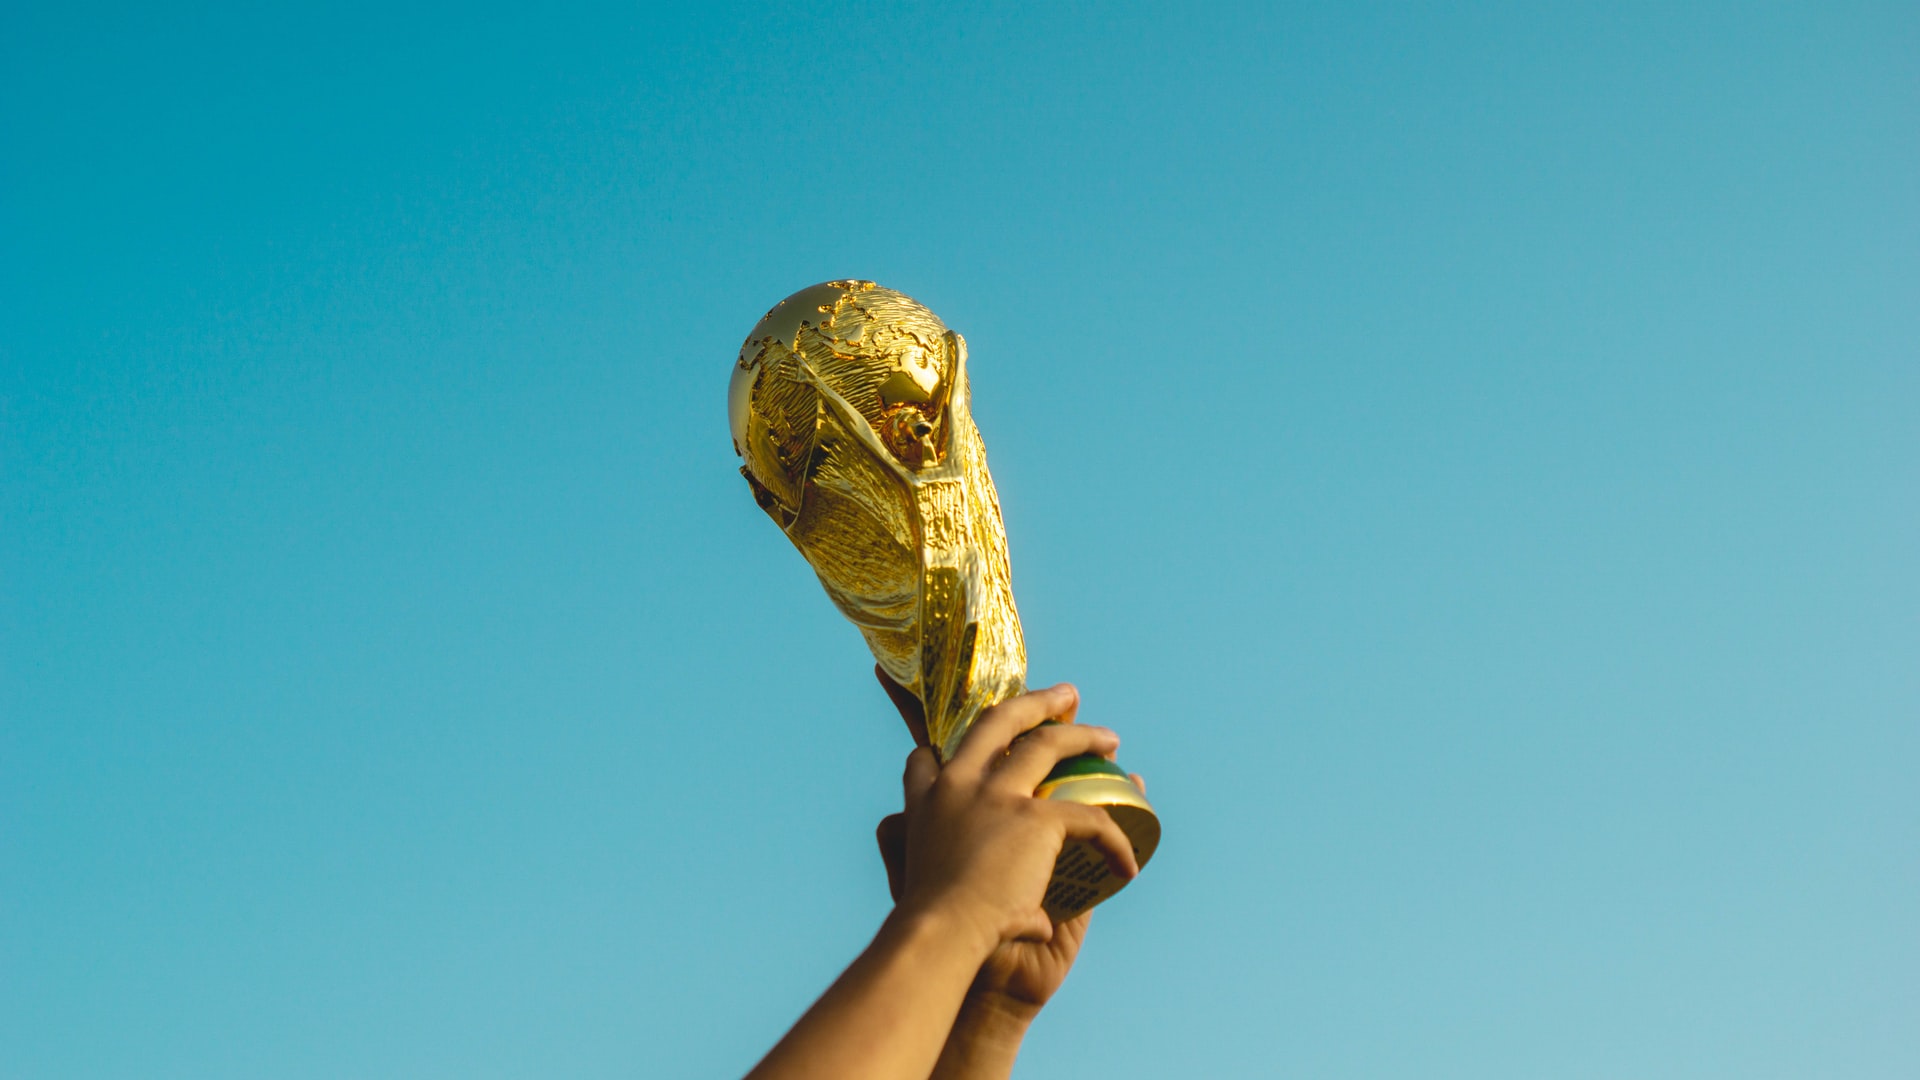 Det nye landshold: Tør vi drømme om noget stort til VM 2022?